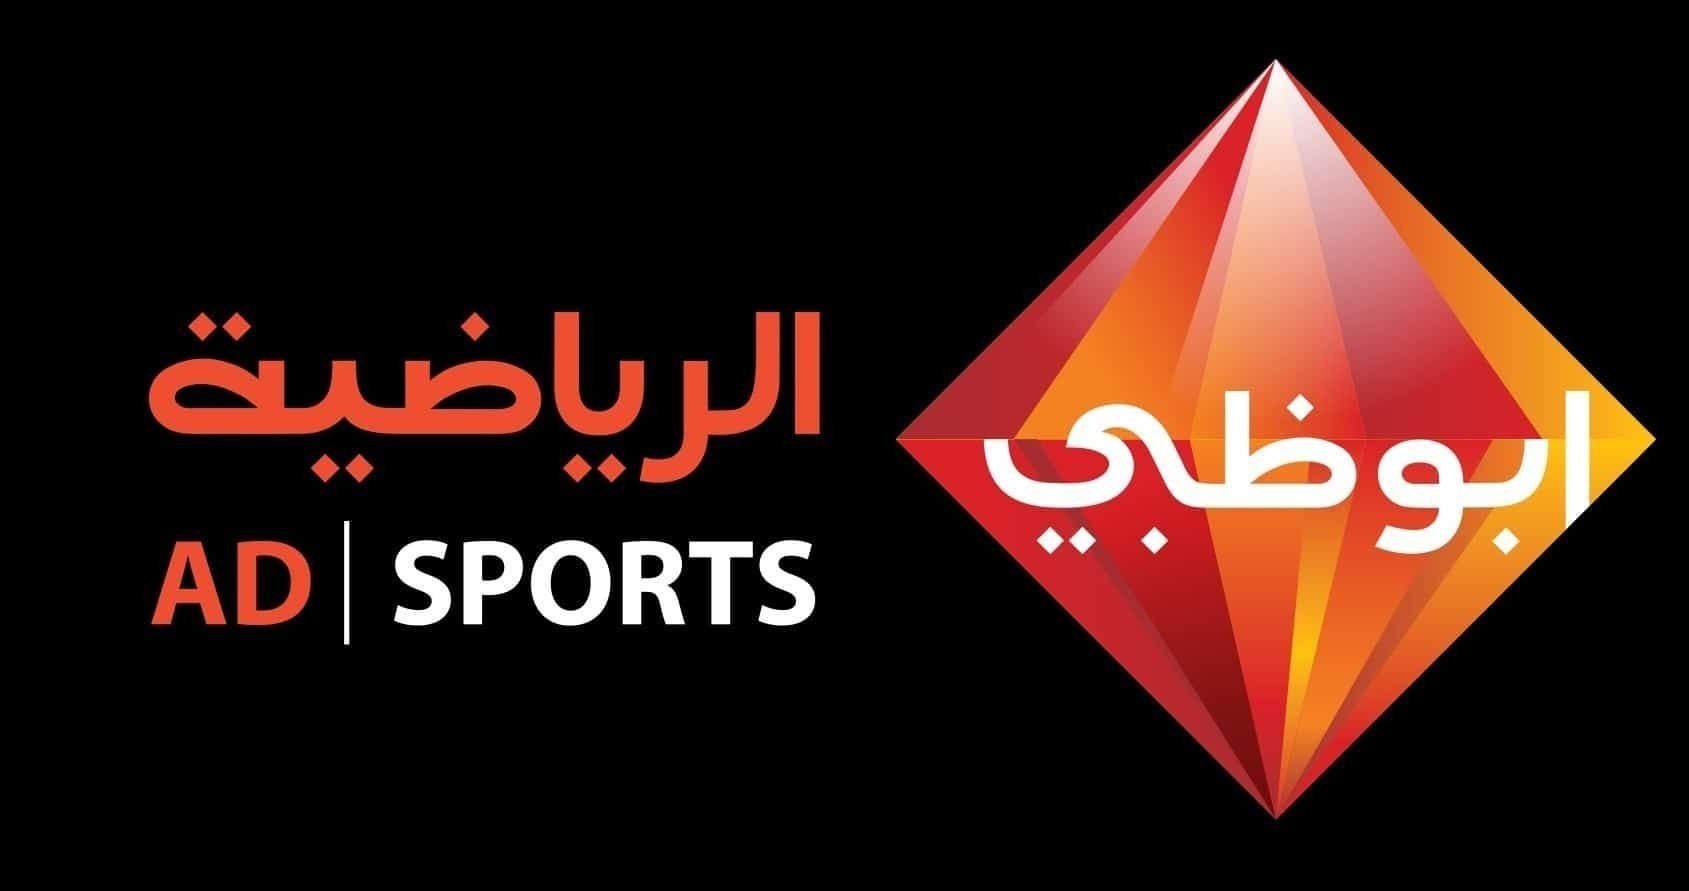 تردد قناة ابوظبي الرياضية